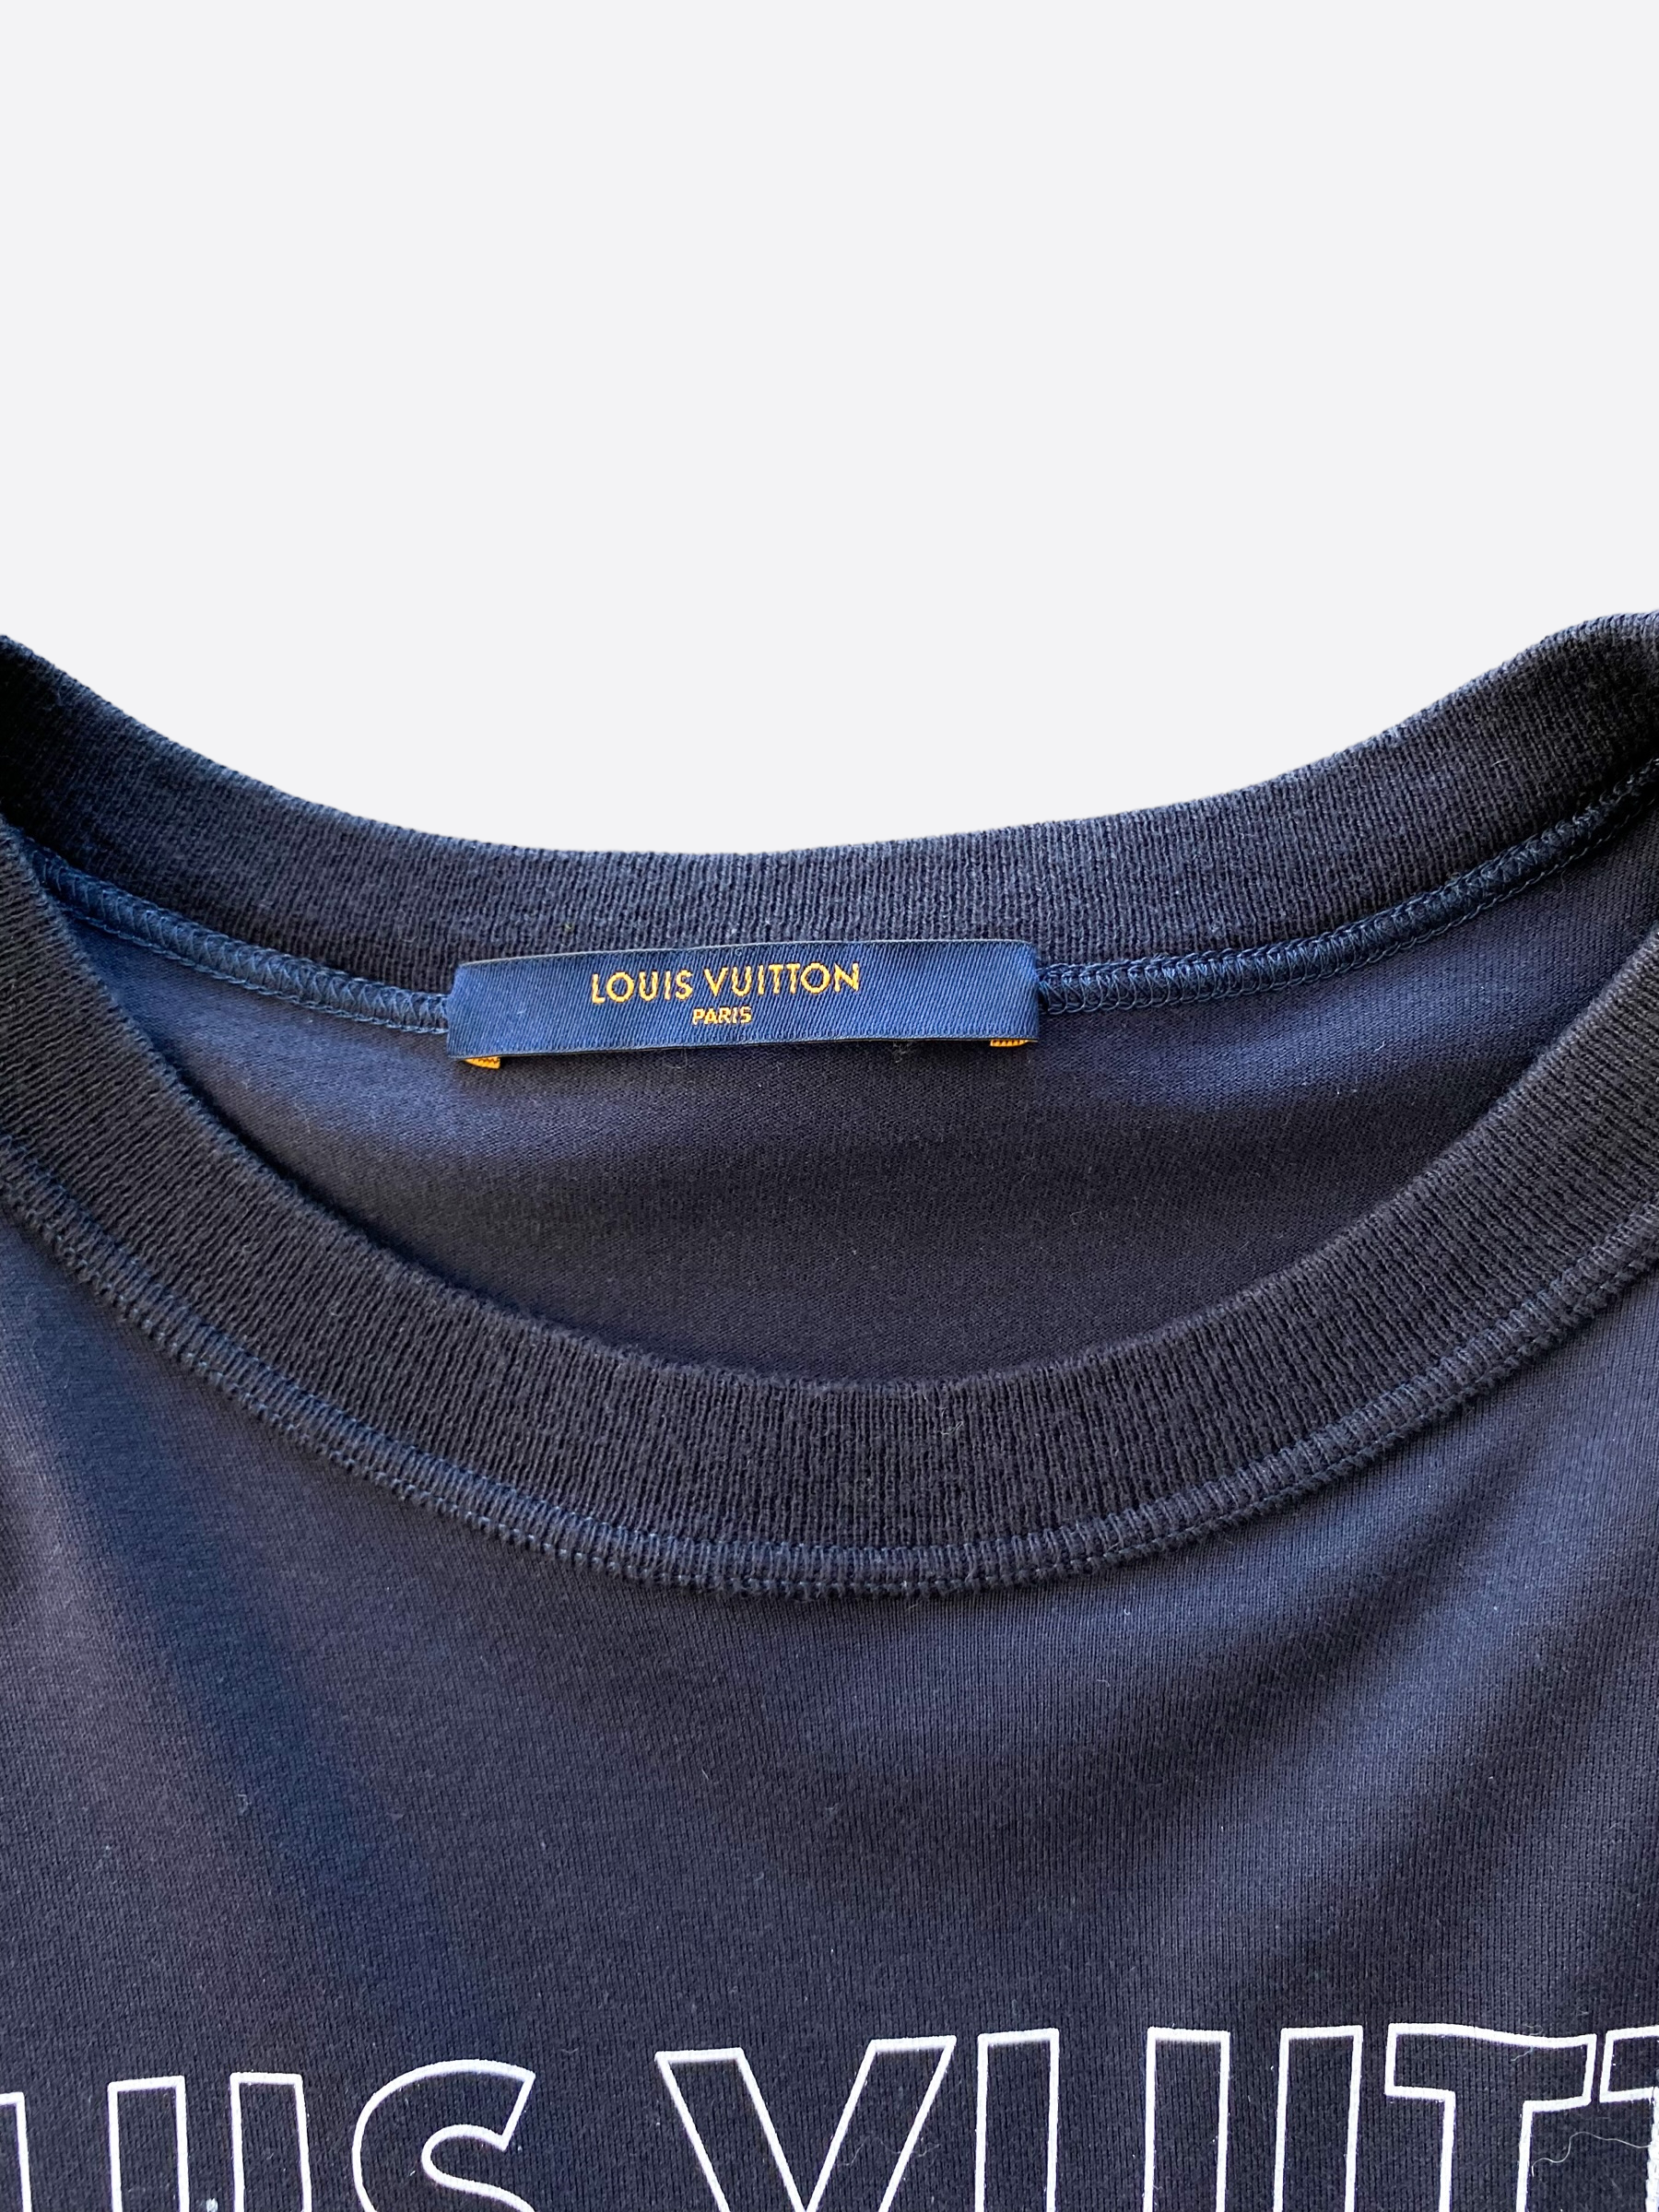 Louis Vuitton Navy Blue Merci Print Cotton Crewneck T-Shirt S